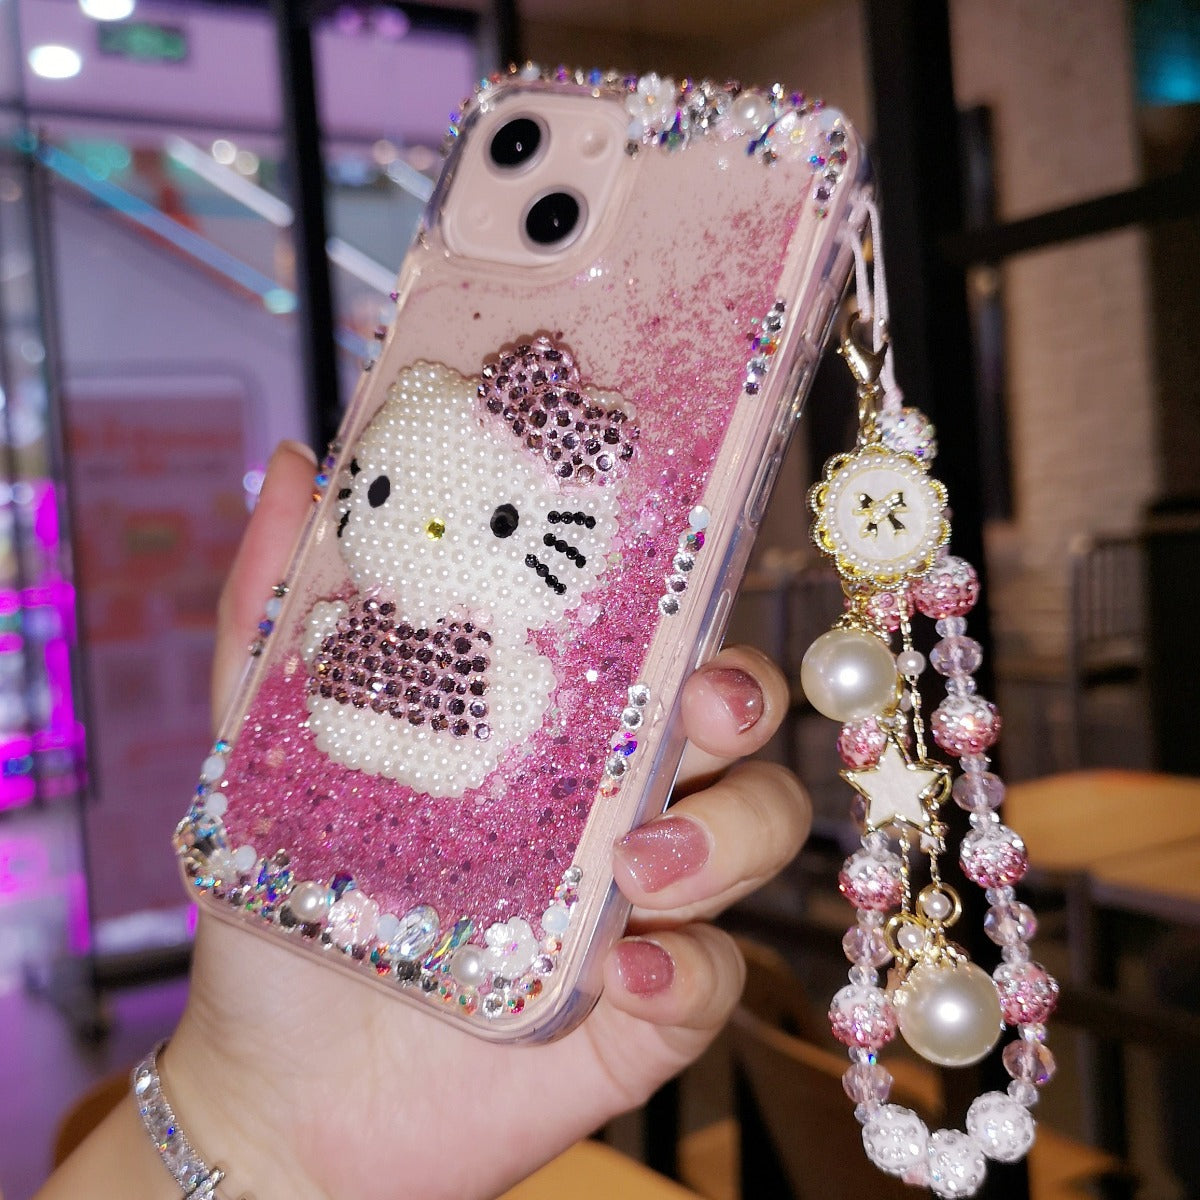 Handmade Hello kitty Rhinestone Quicksand Cute Pink Phone Case - Jam Garden